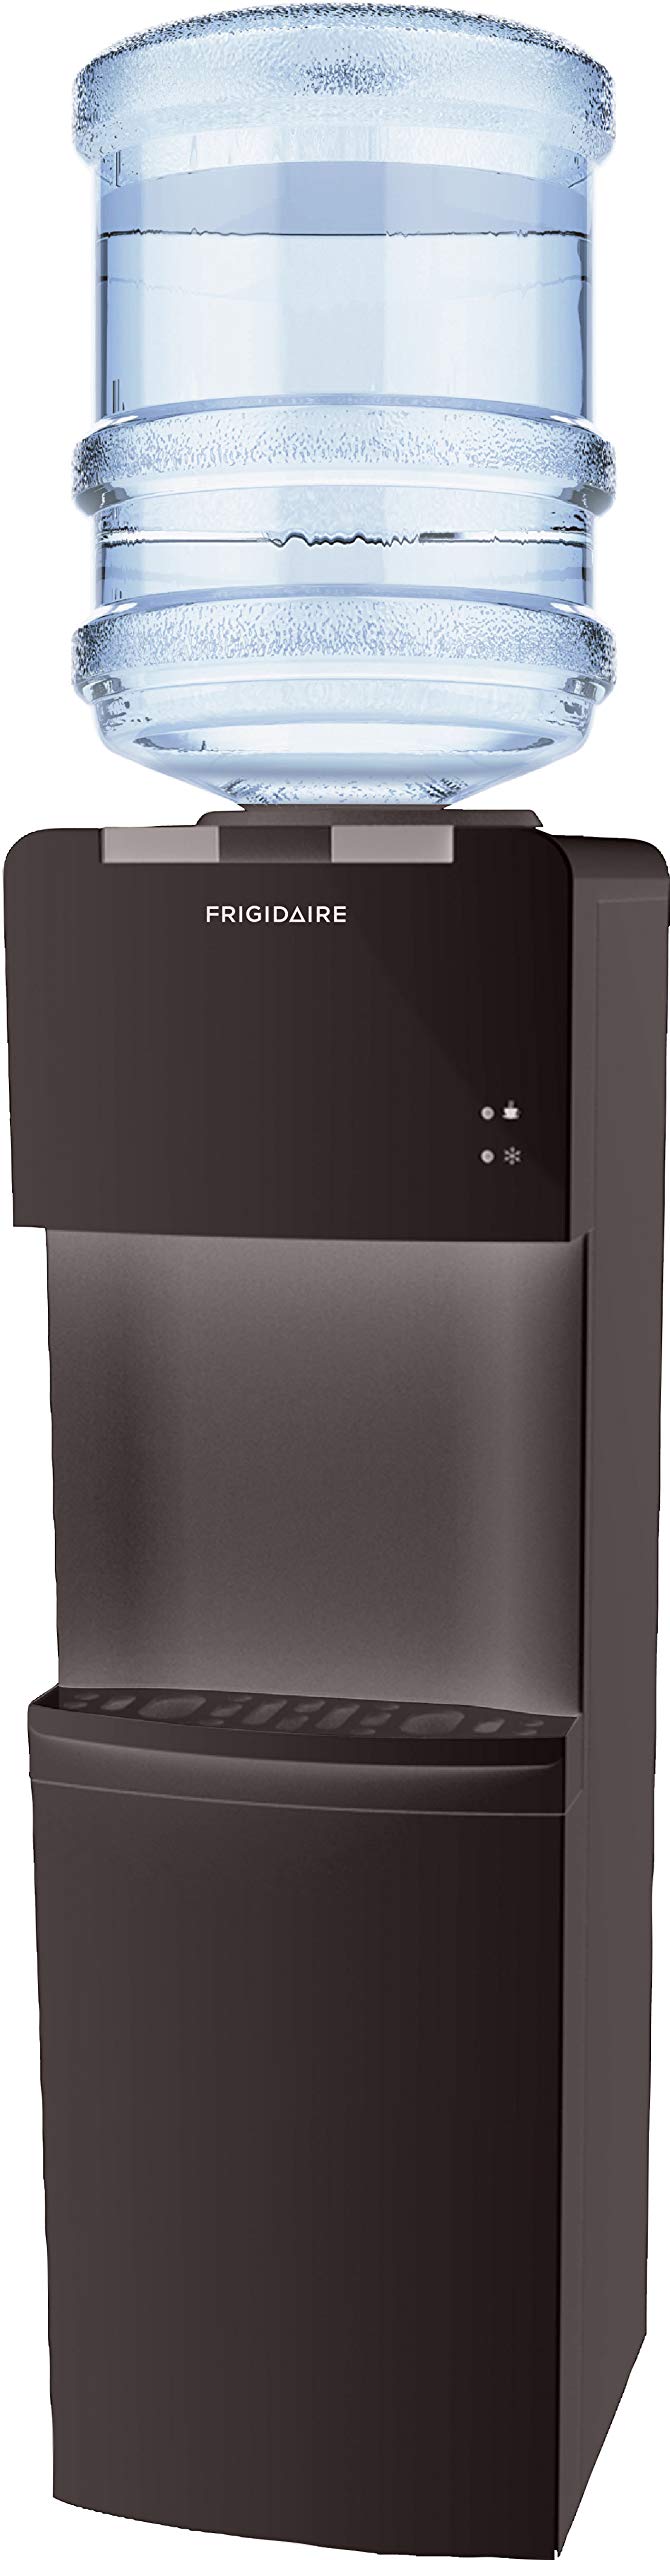 Frigidaire Water Cooler/Dispenser